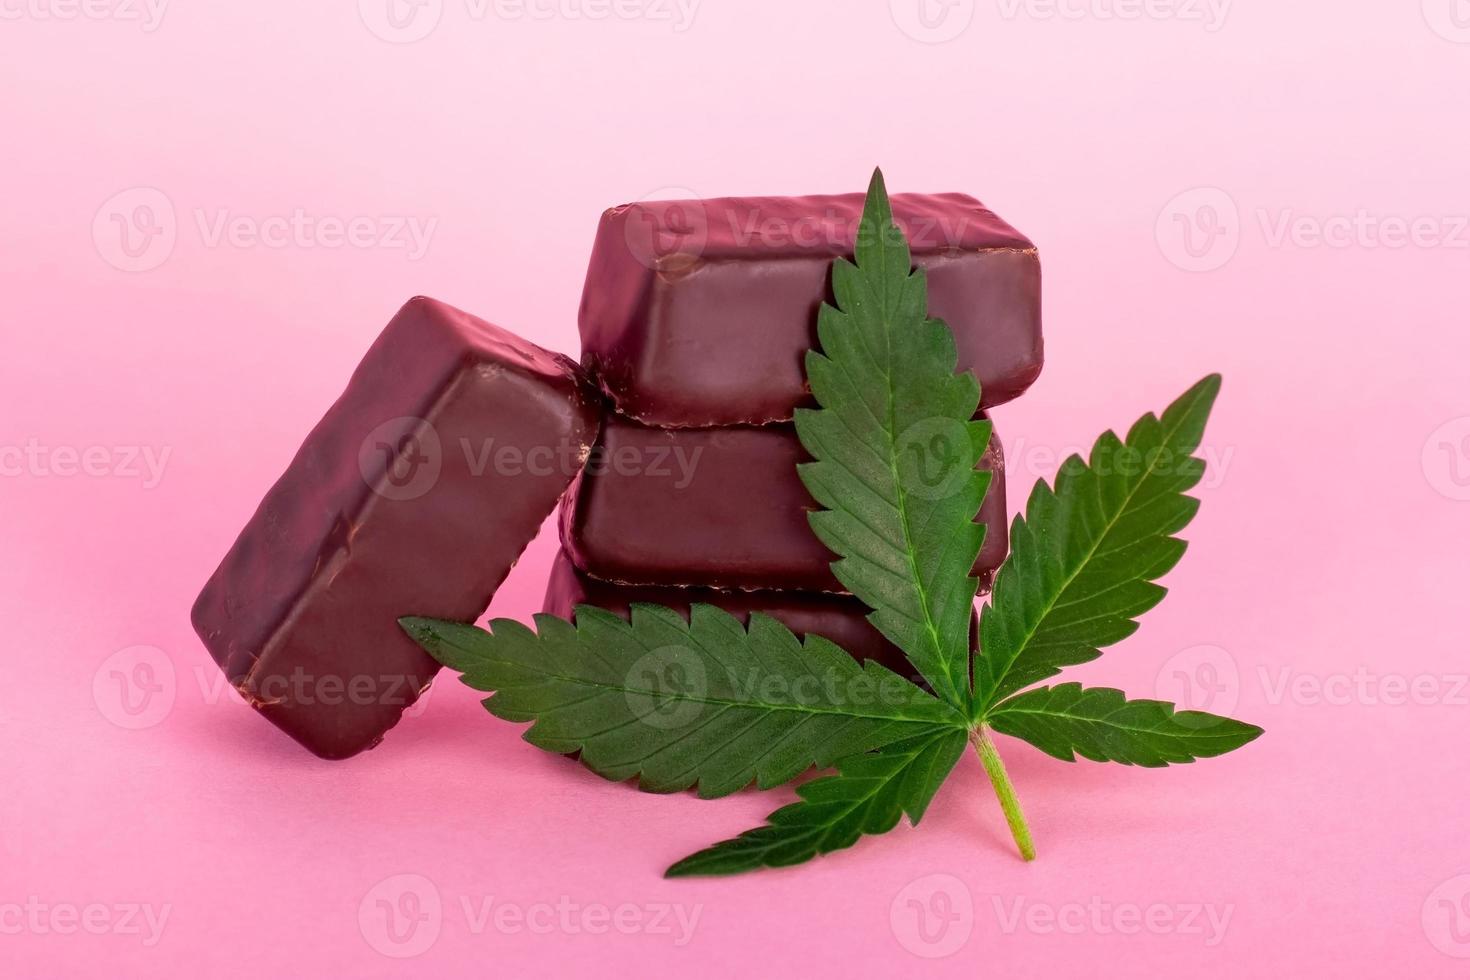 chocoladesuikergoed met medicinale cannabis op roze achtergrond foto